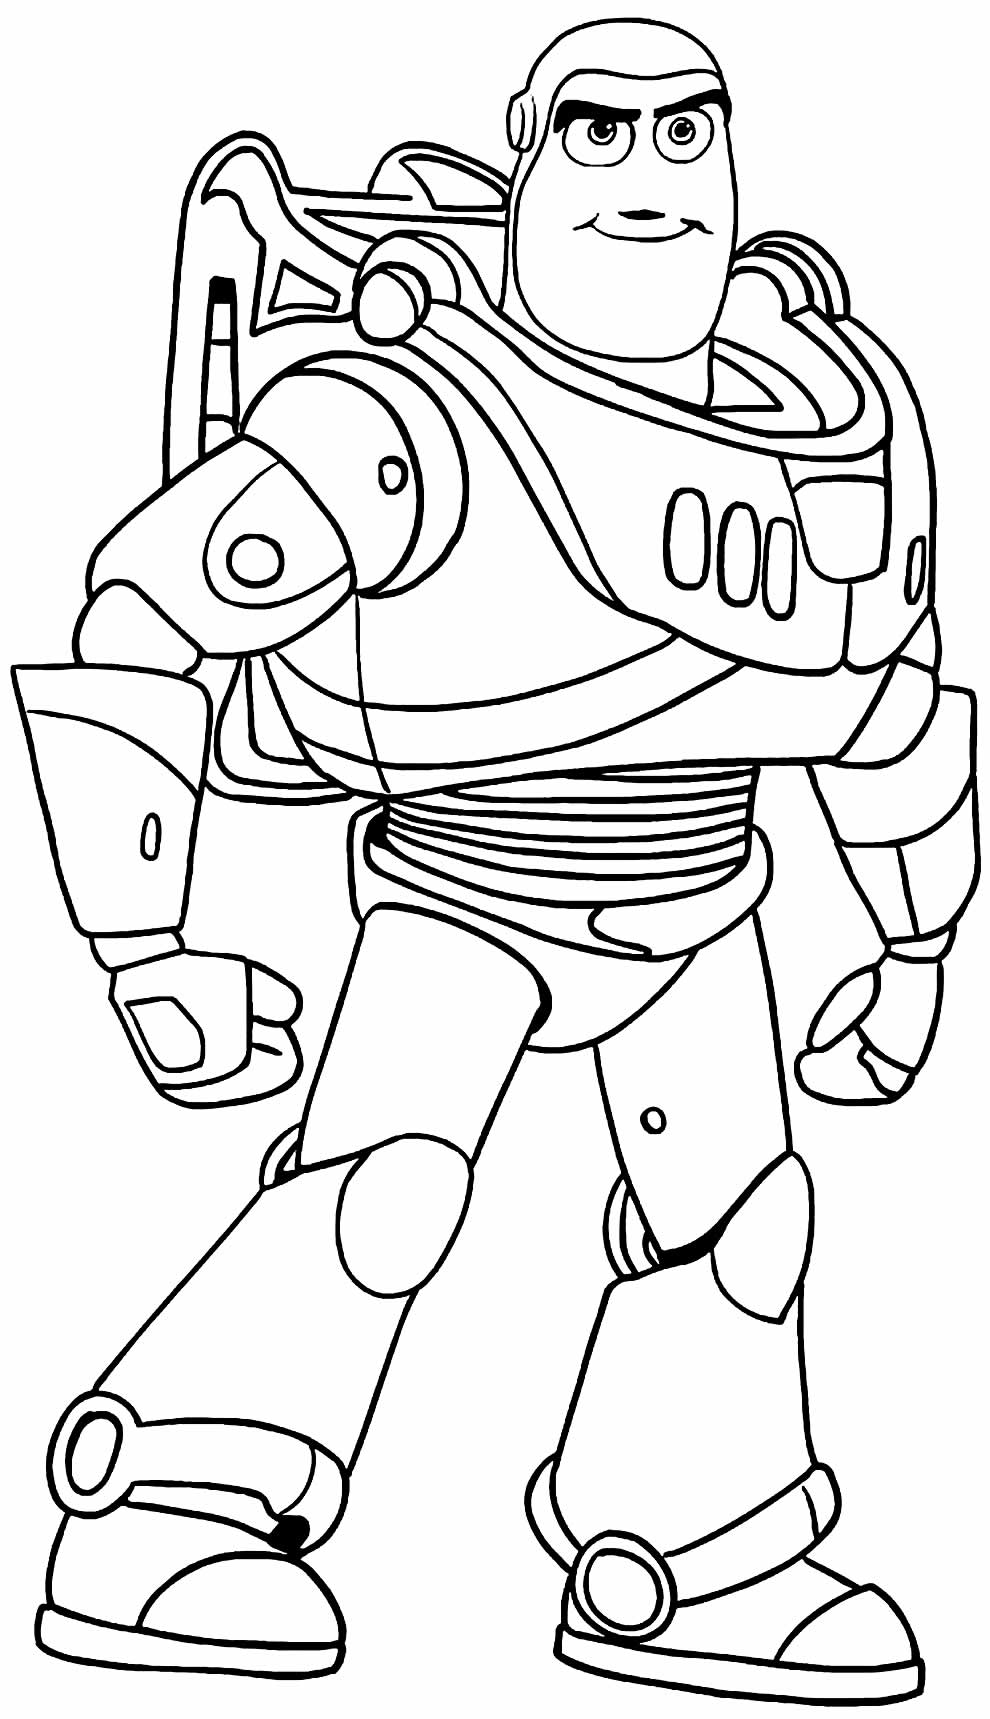 Desenho de Buzz Lightyear para colorir